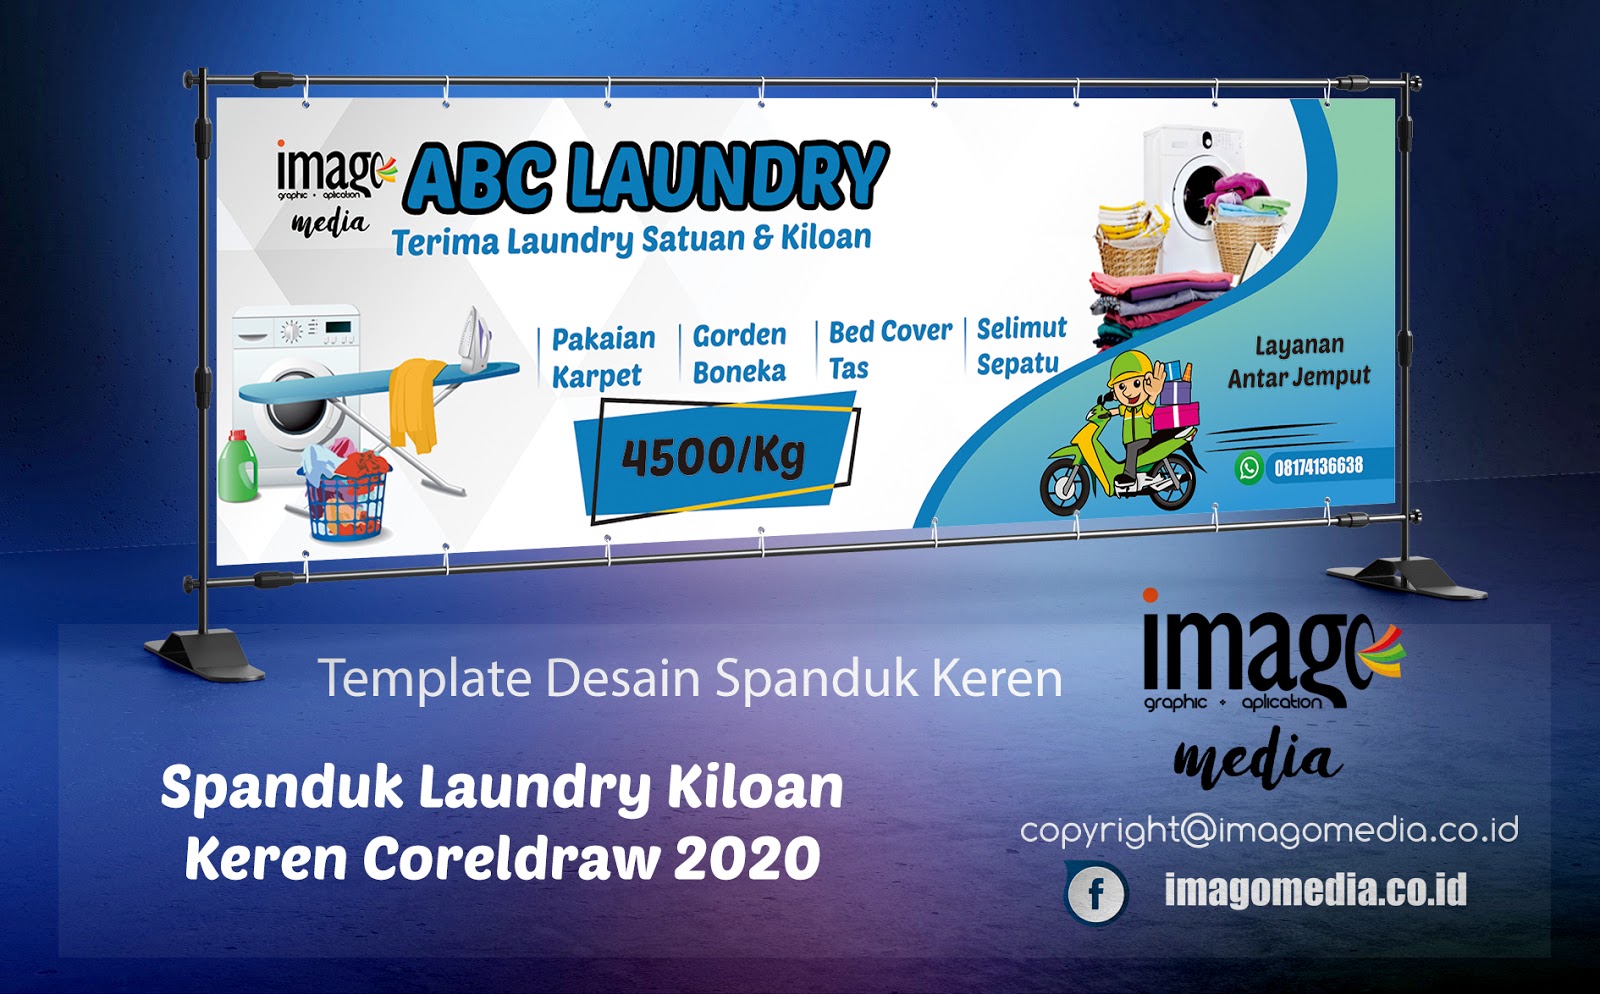  Desain Spanduk Laundry  Kiloan Keren Coreldraw 2020 Imago 